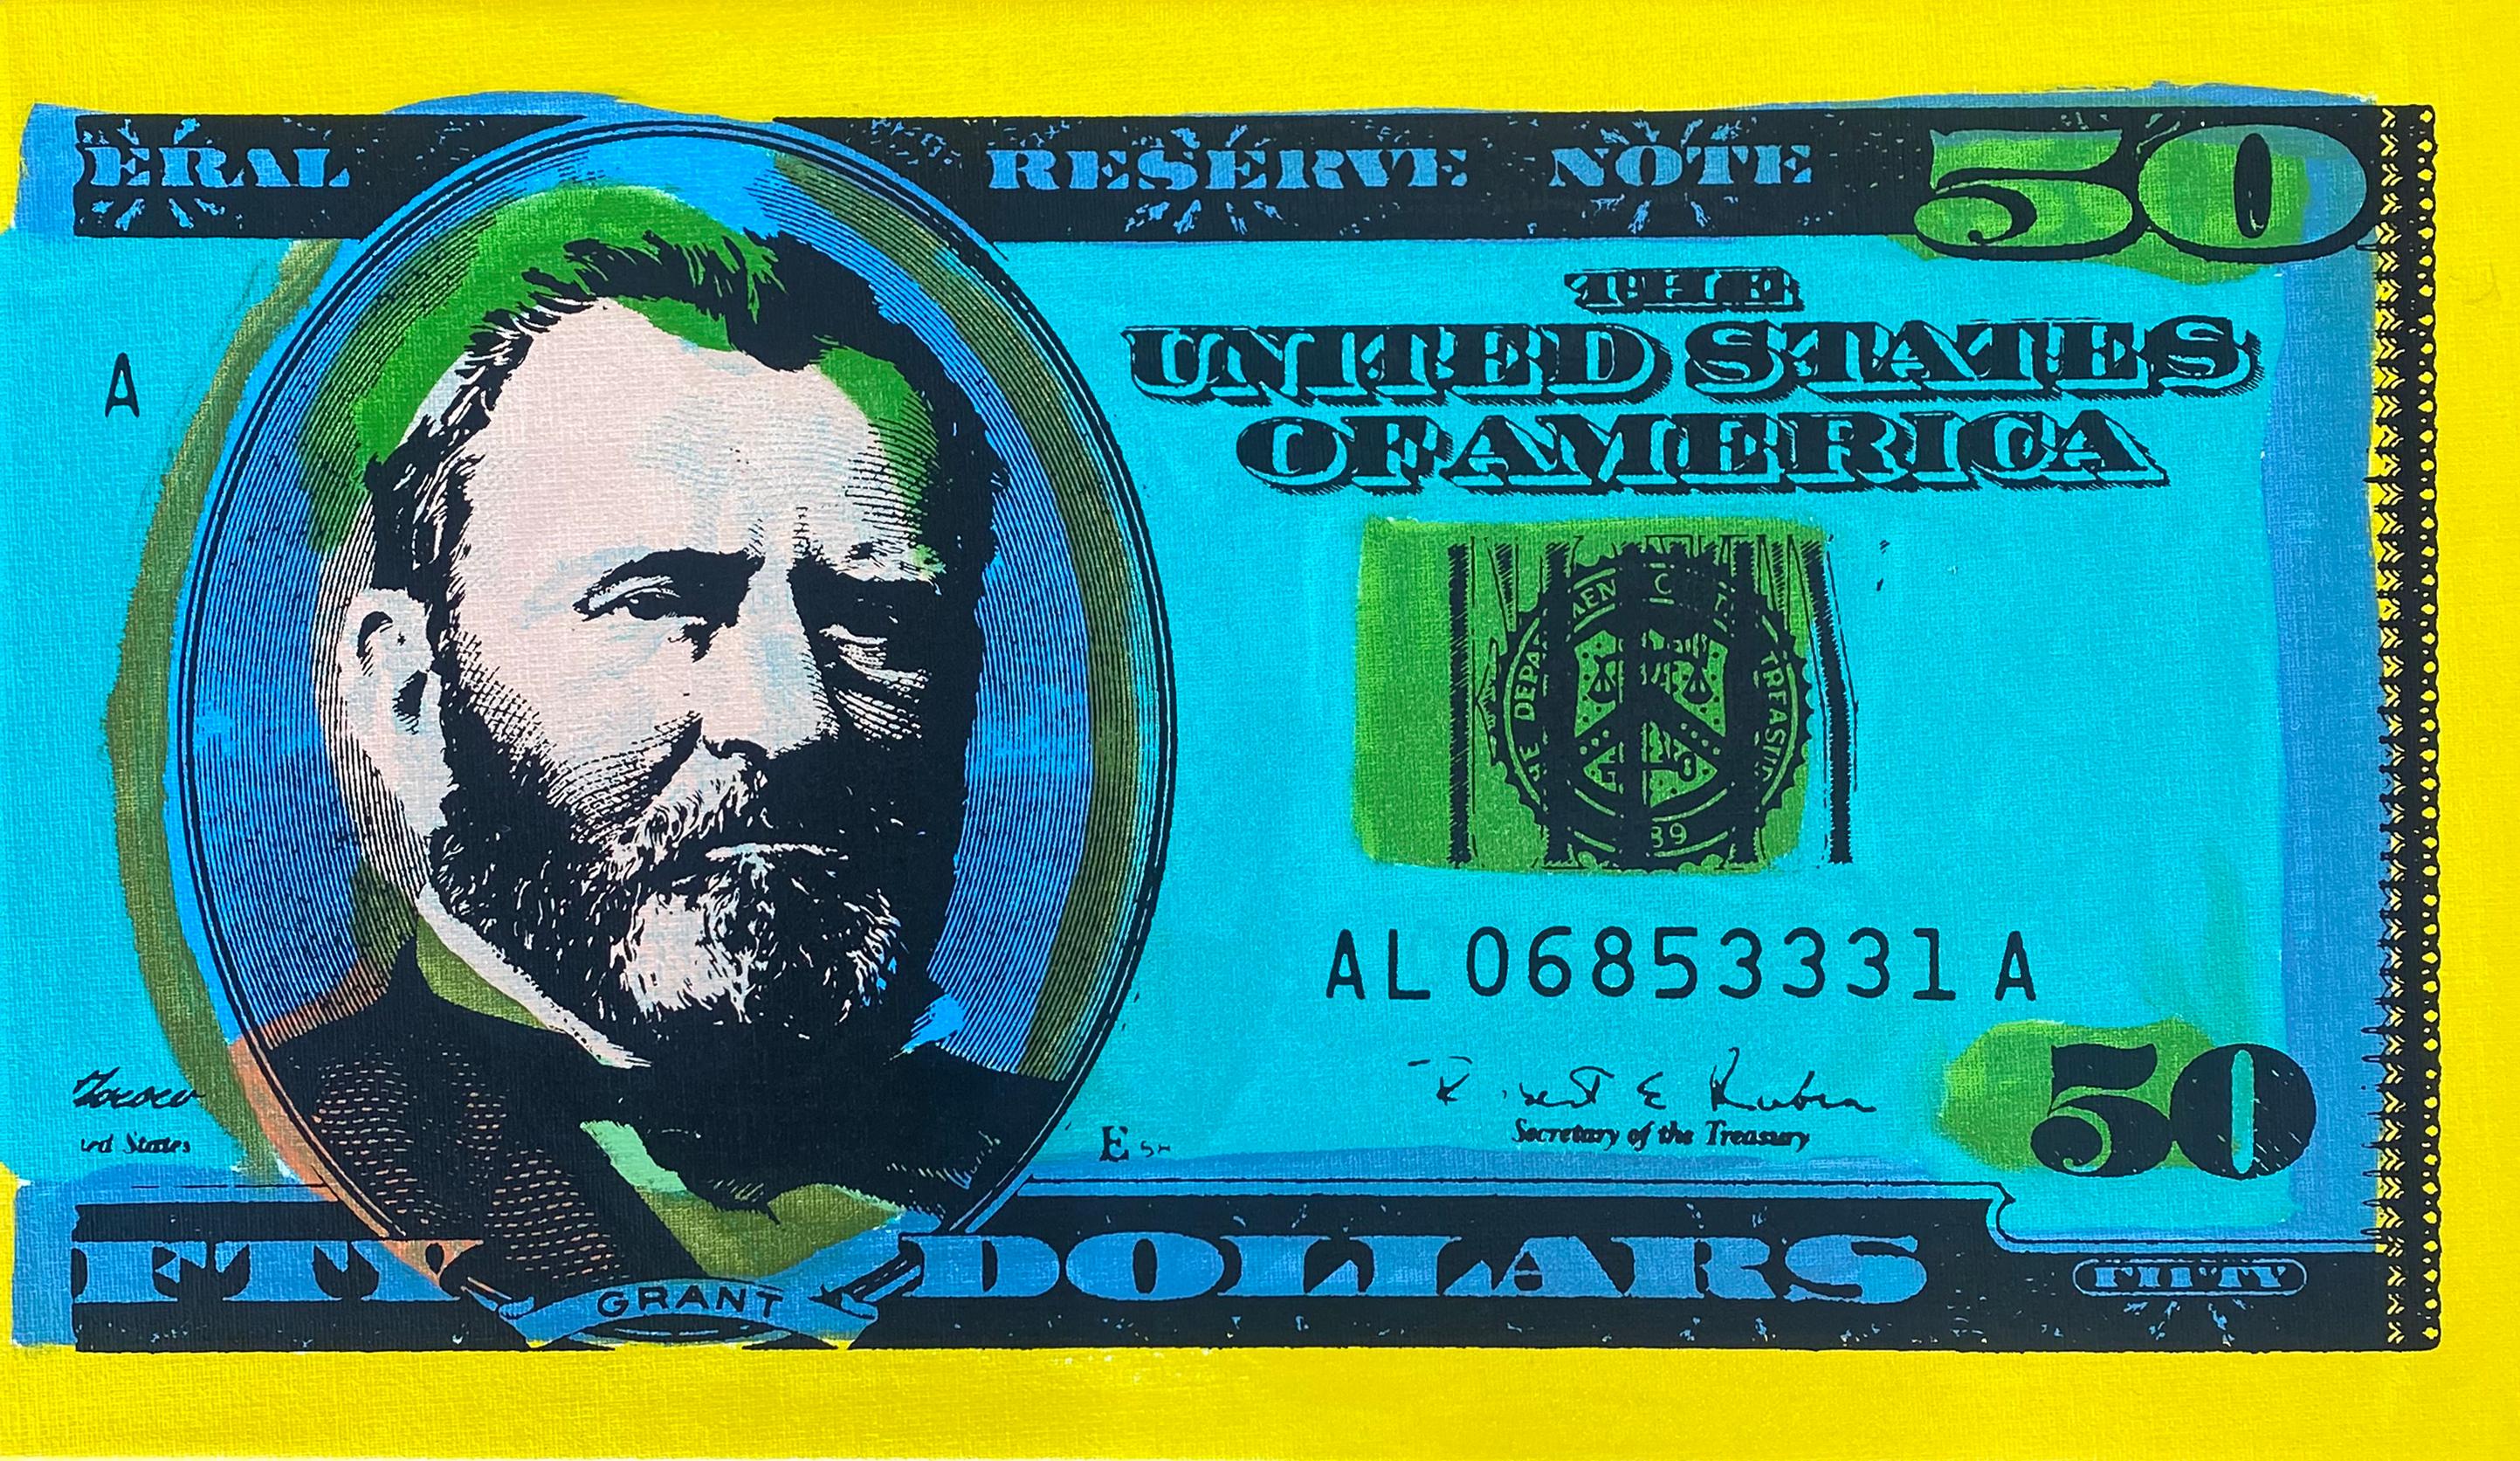 Steve Kaufman Figurative Print - 50 Dollar Bill